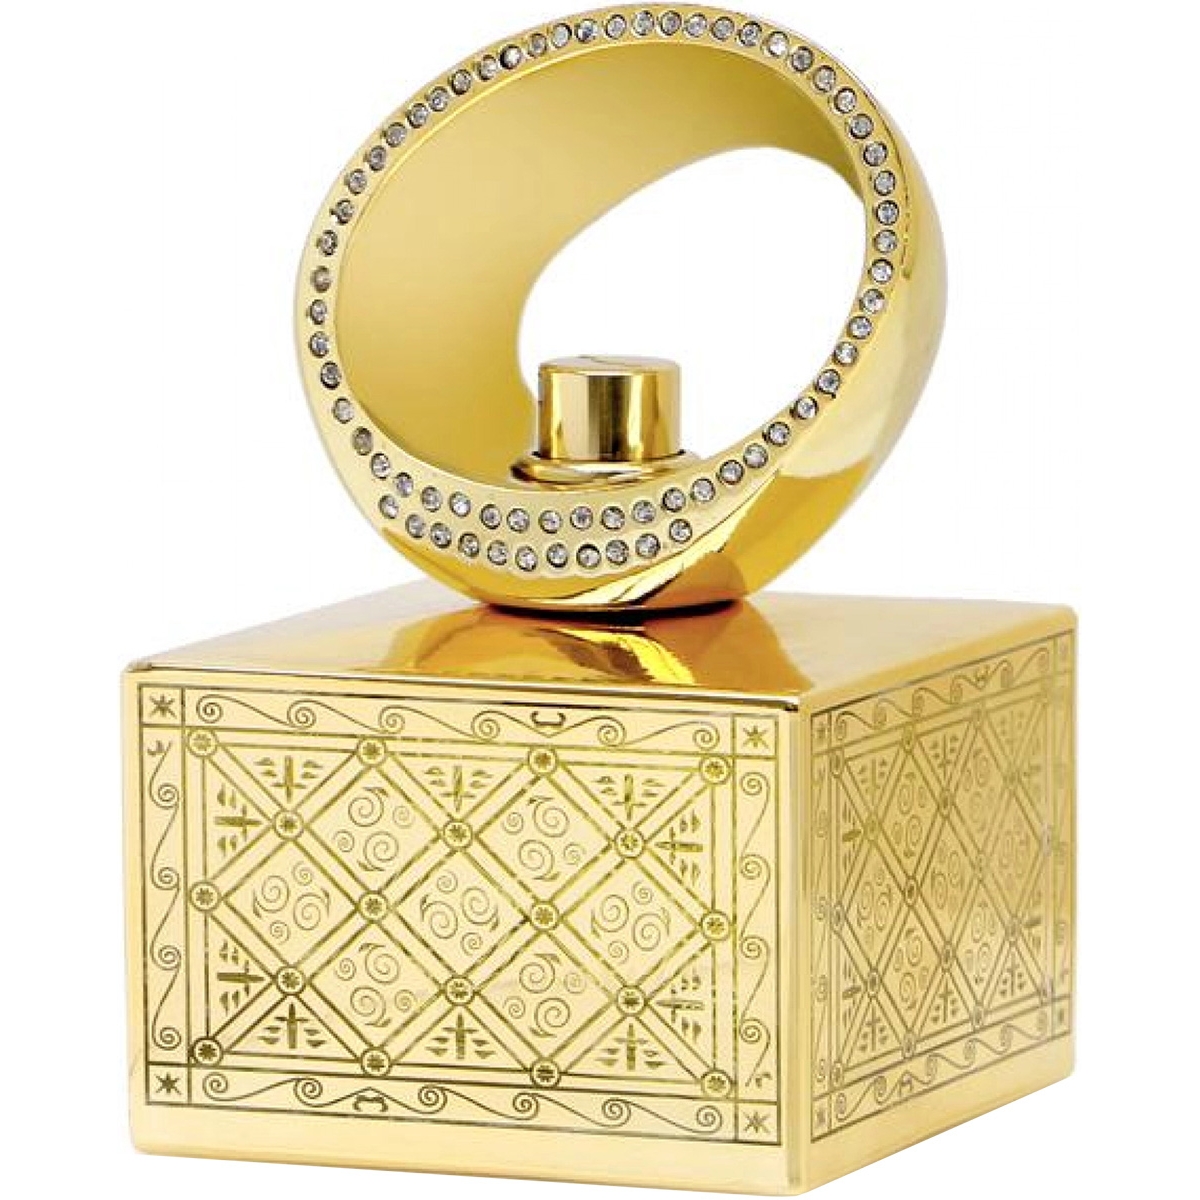 Zawaya Junaid Perfumes Perfumes, Profumi Unisex, Arada Perfumes